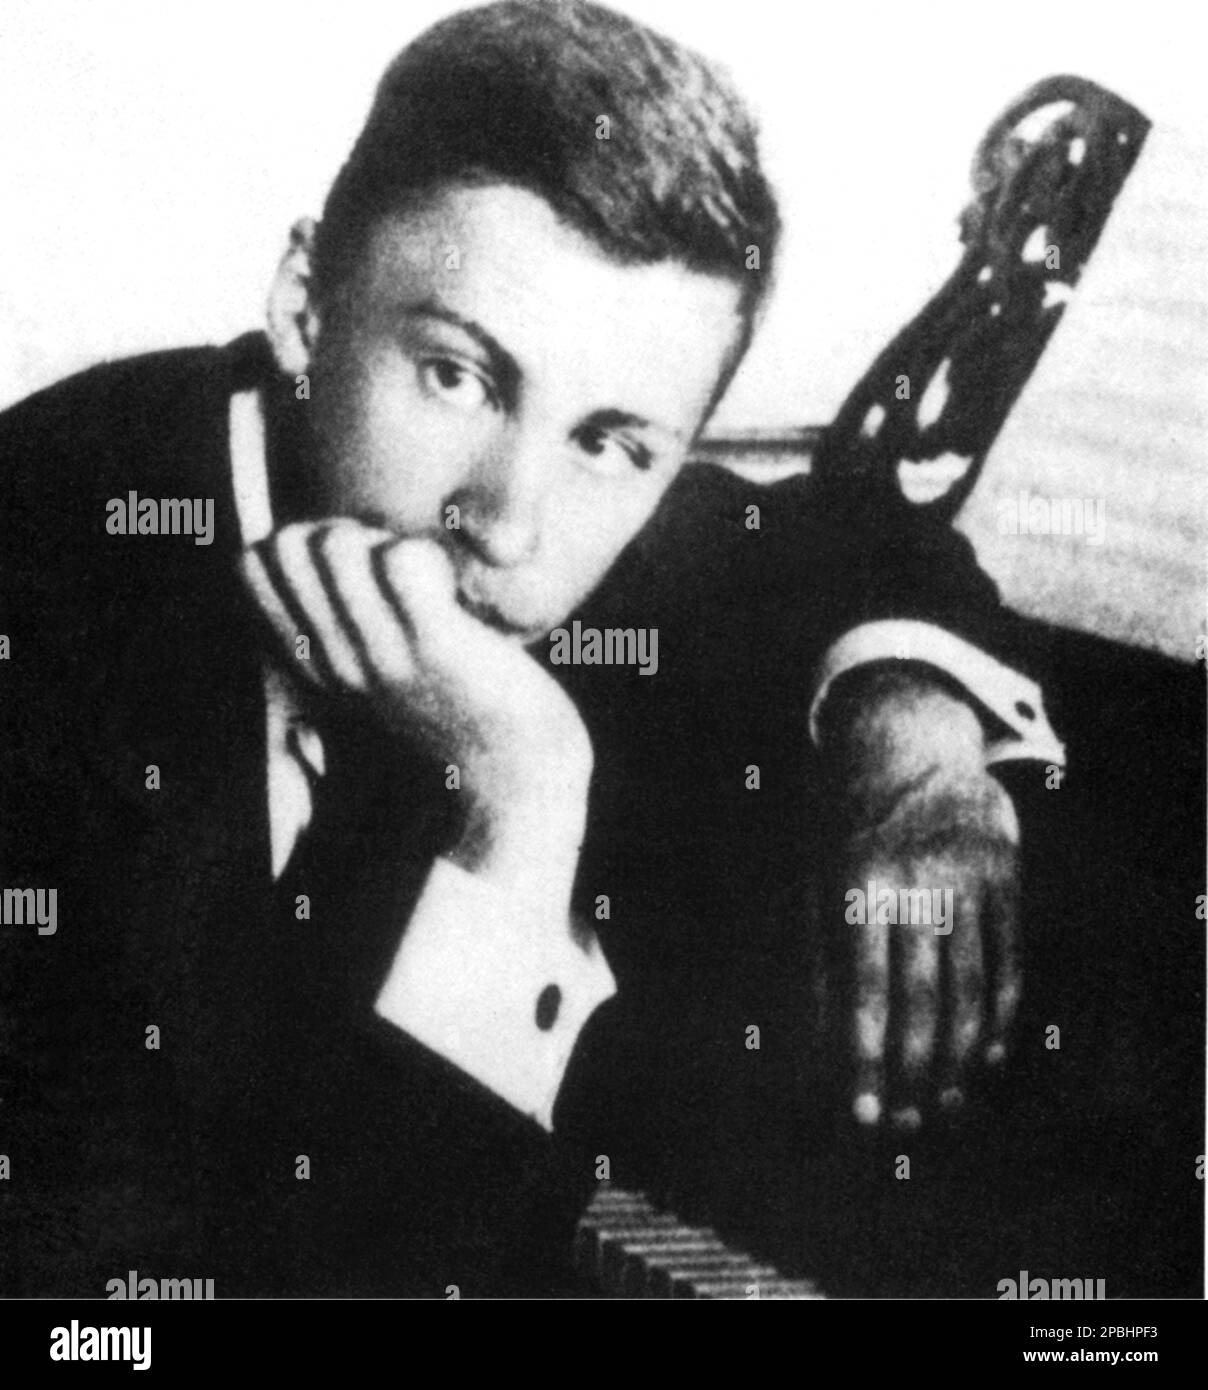 1910 ca : le compositeur russe SERGEJ PROKOFIEV ( Sergej Sergeïevic Prokof'ev, 1891 - 1953 ) , était un compositeur russe qui maîtrisait de nombreux genres musicaux et est venu à être admiré comme l'un des plus grands compositeurs du 20th siècle - Sergej Sergeïevic Prokofjev , Sergei , Sergueï ou Serge et Prokofief Prokofiev Prokofief Prokofieff - BALLETS RUSSES de DIAGHILEV - Diagilev - COMPOSIORE - OPERA LIRICA - CLASSICA - CLASSIQUE - PORTRAIT - RITRATTO - MUSICISTA - MUSICA - pianiste - pianista - ANAVANGUARDIA - ARCHIVIO- GBANB- ARCHIGARDE Banque D'Images